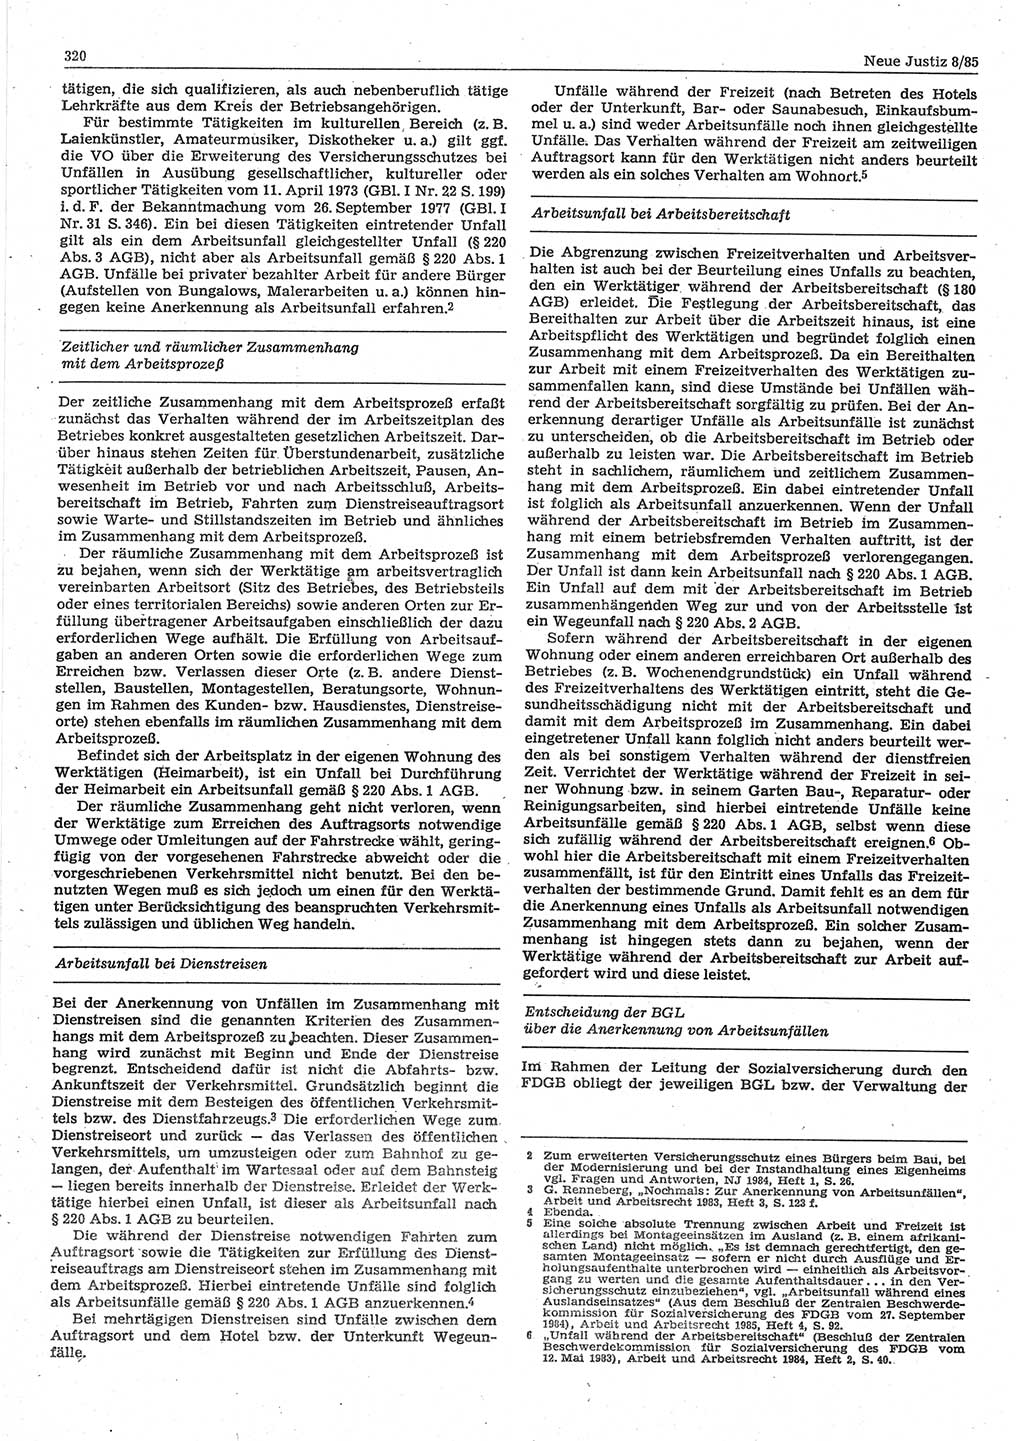 Neue Justiz (NJ), Zeitschrift für sozialistisches Recht und Gesetzlichkeit [Deutsche Demokratische Republik (DDR)], 39. Jahrgang 1985, Seite 320 (NJ DDR 1985, S. 320)